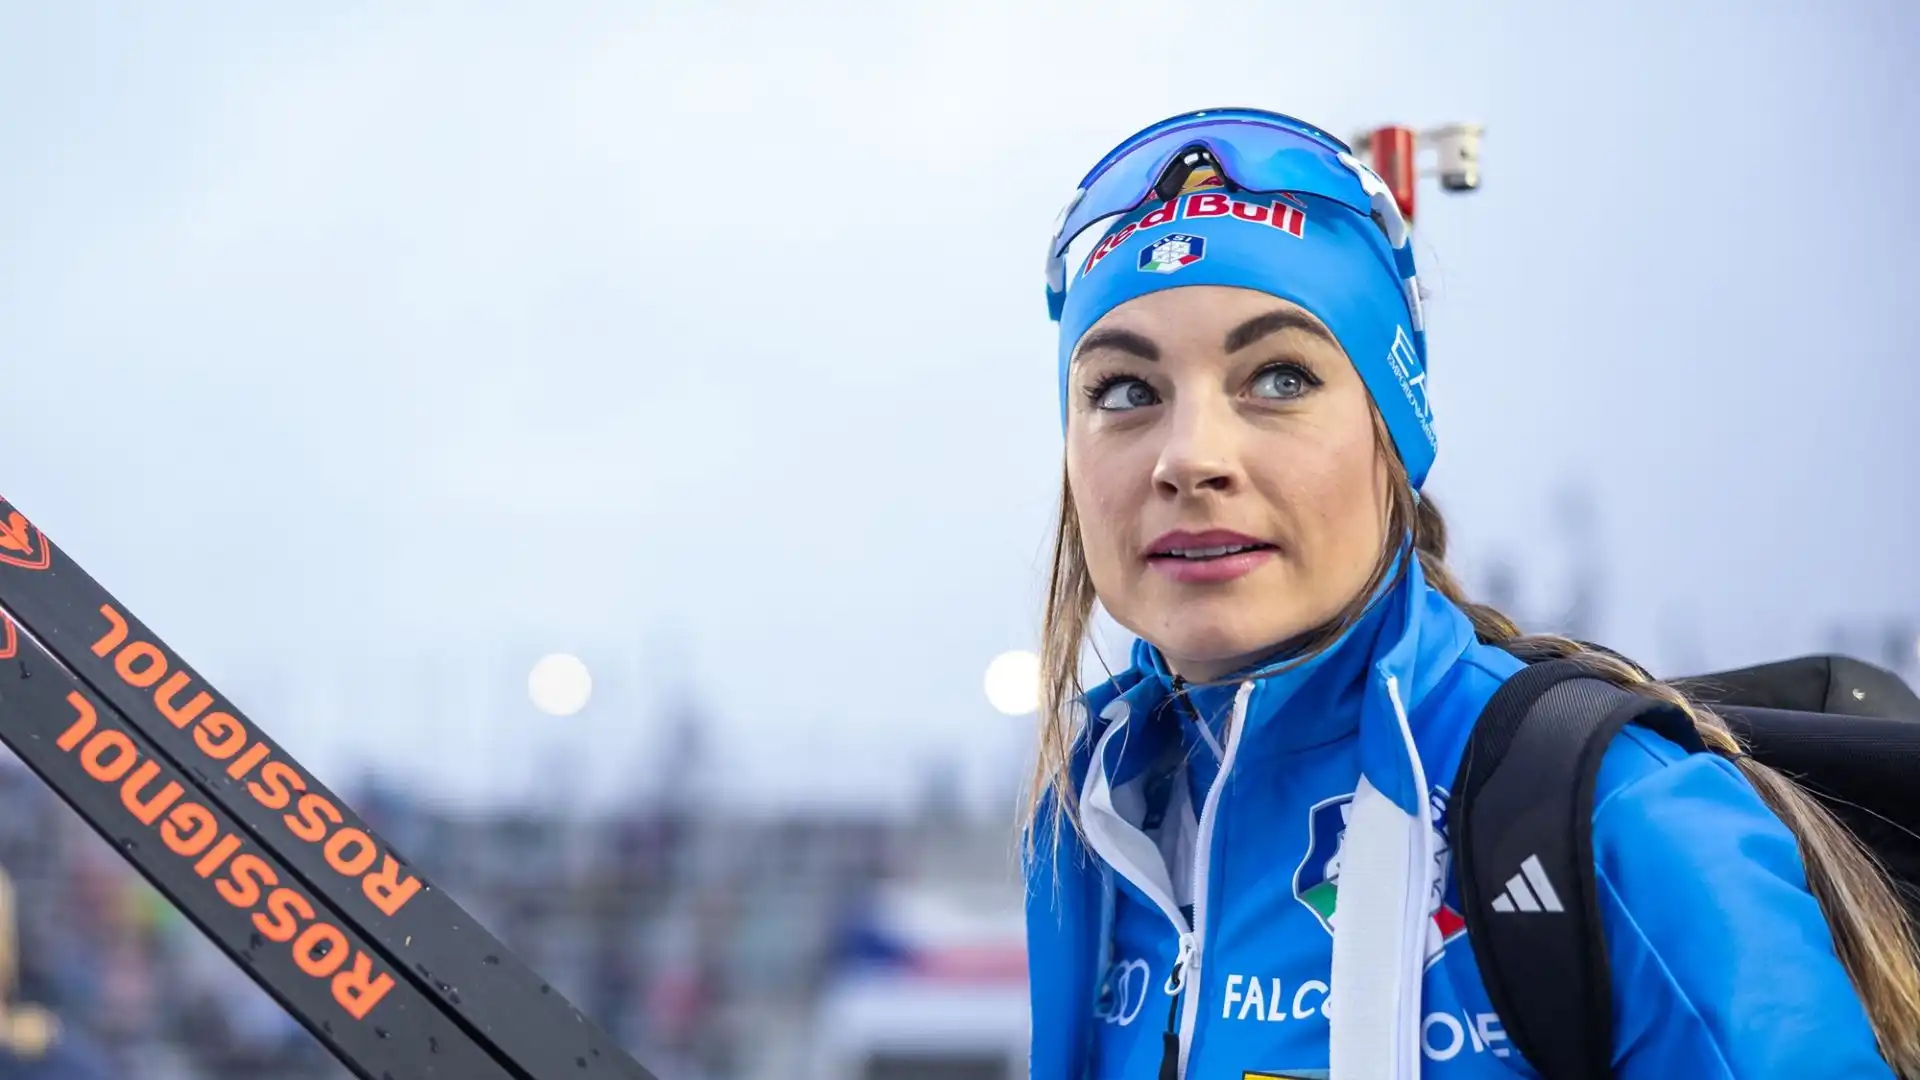 La biatleta azzurra, tre volte campionessa del mondo, ha annunciato che concluderà la sua stagione con la gara di domenica